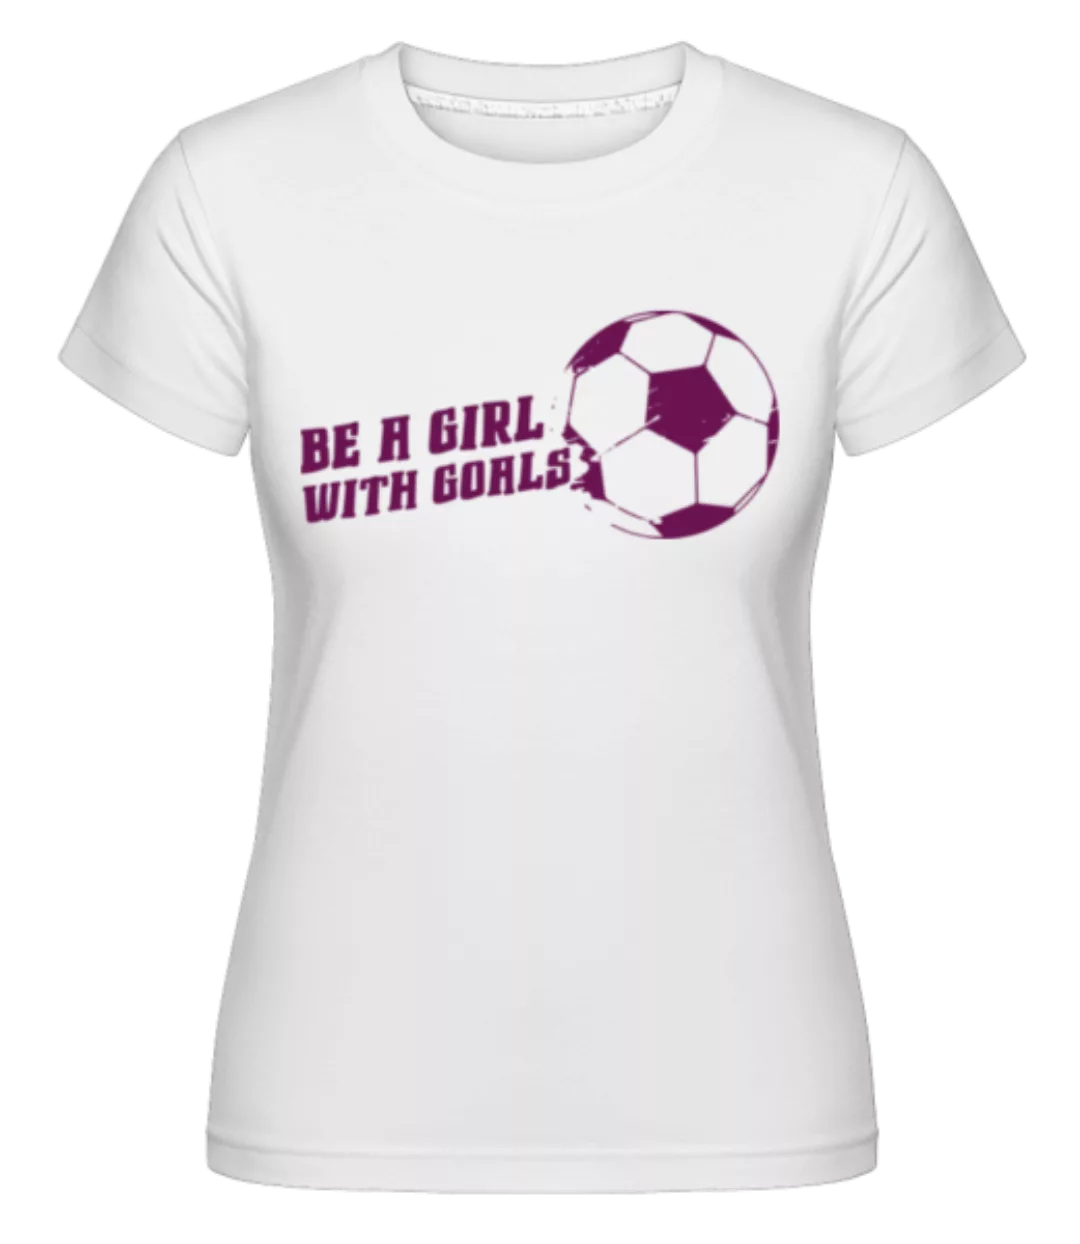 Be A Girl With Goals · Shirtinator Frauen T-Shirt günstig online kaufen